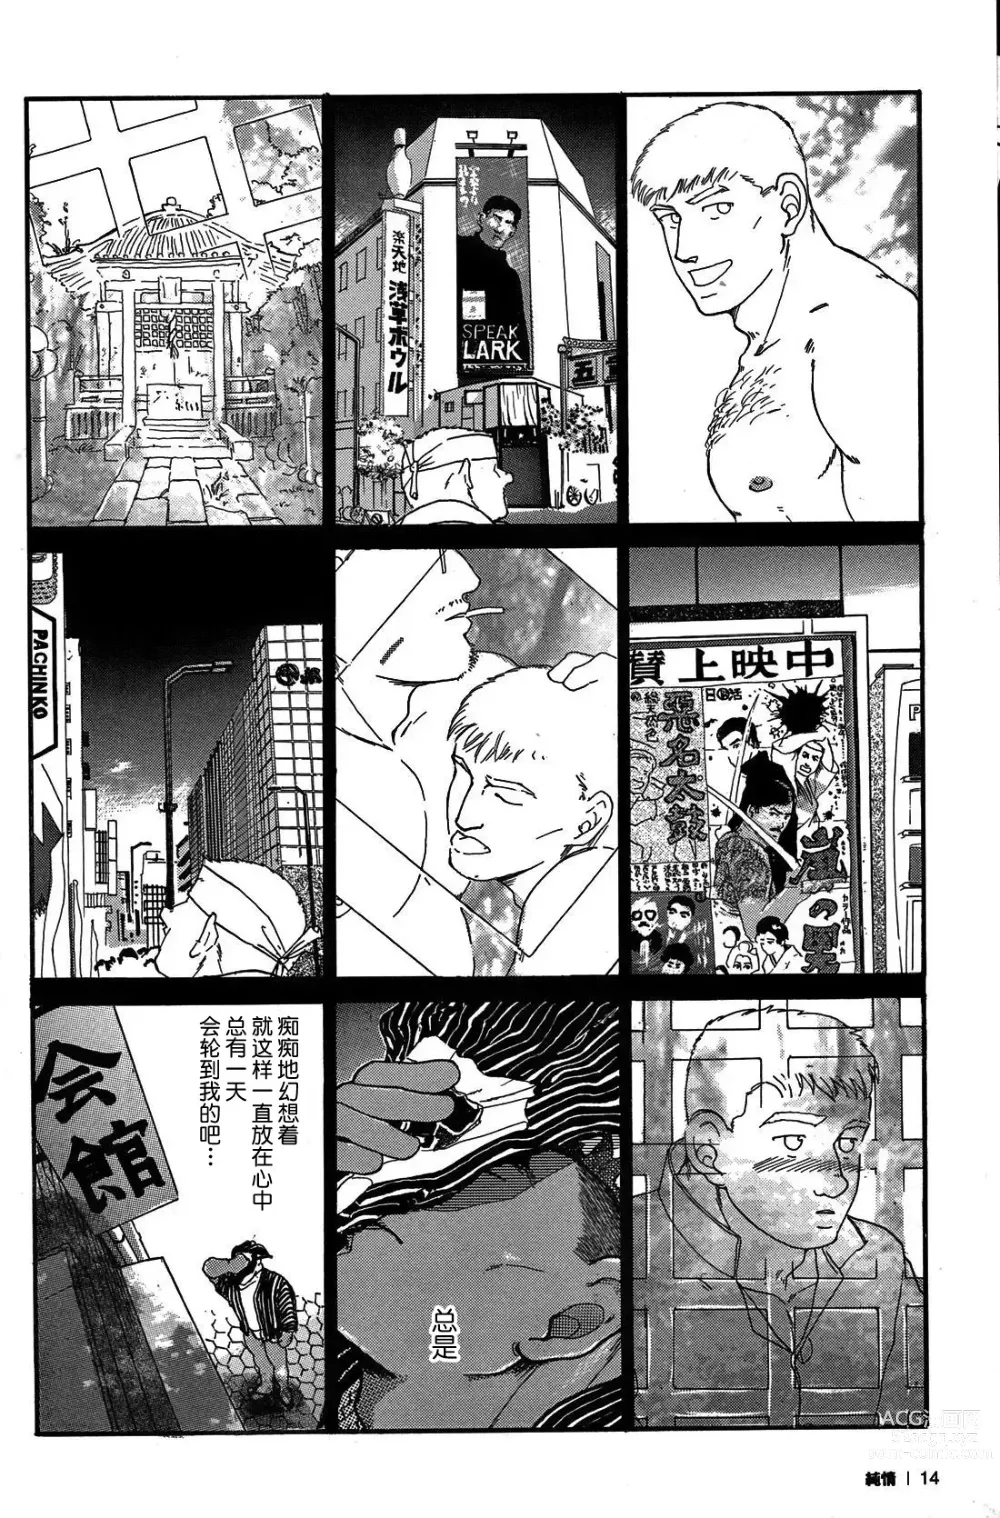 Page 13 of manga 纯情-第一章-纯情!!